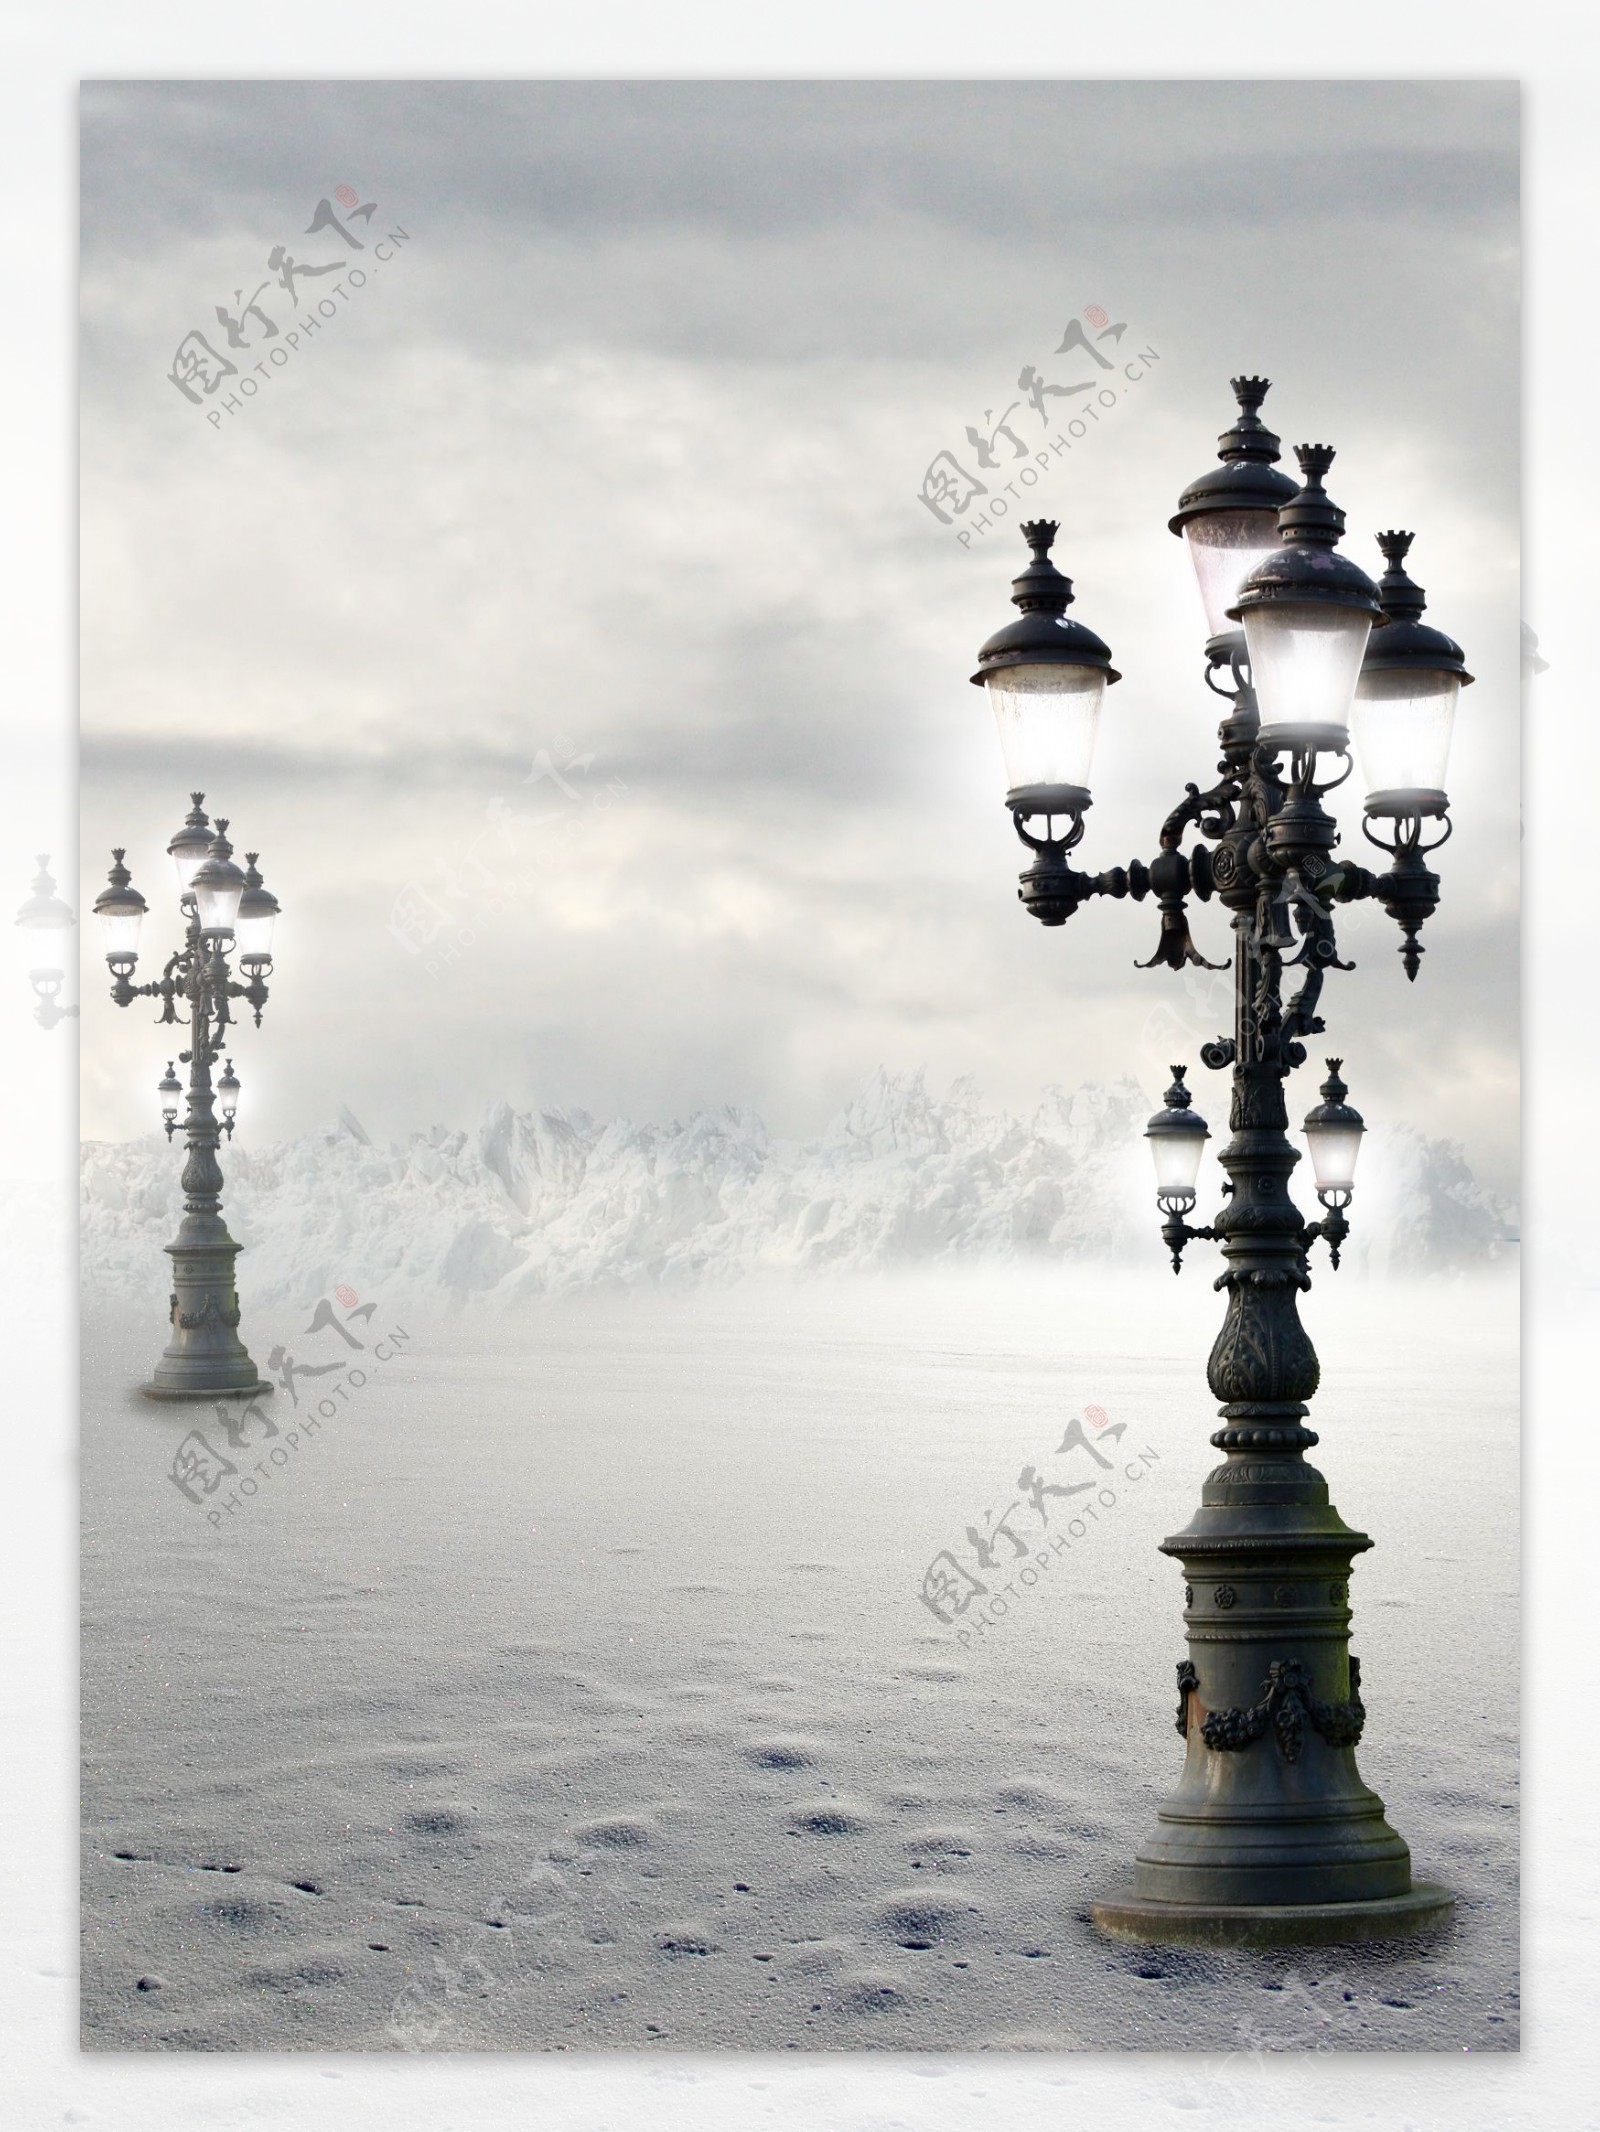 路灯与雪山风景图片